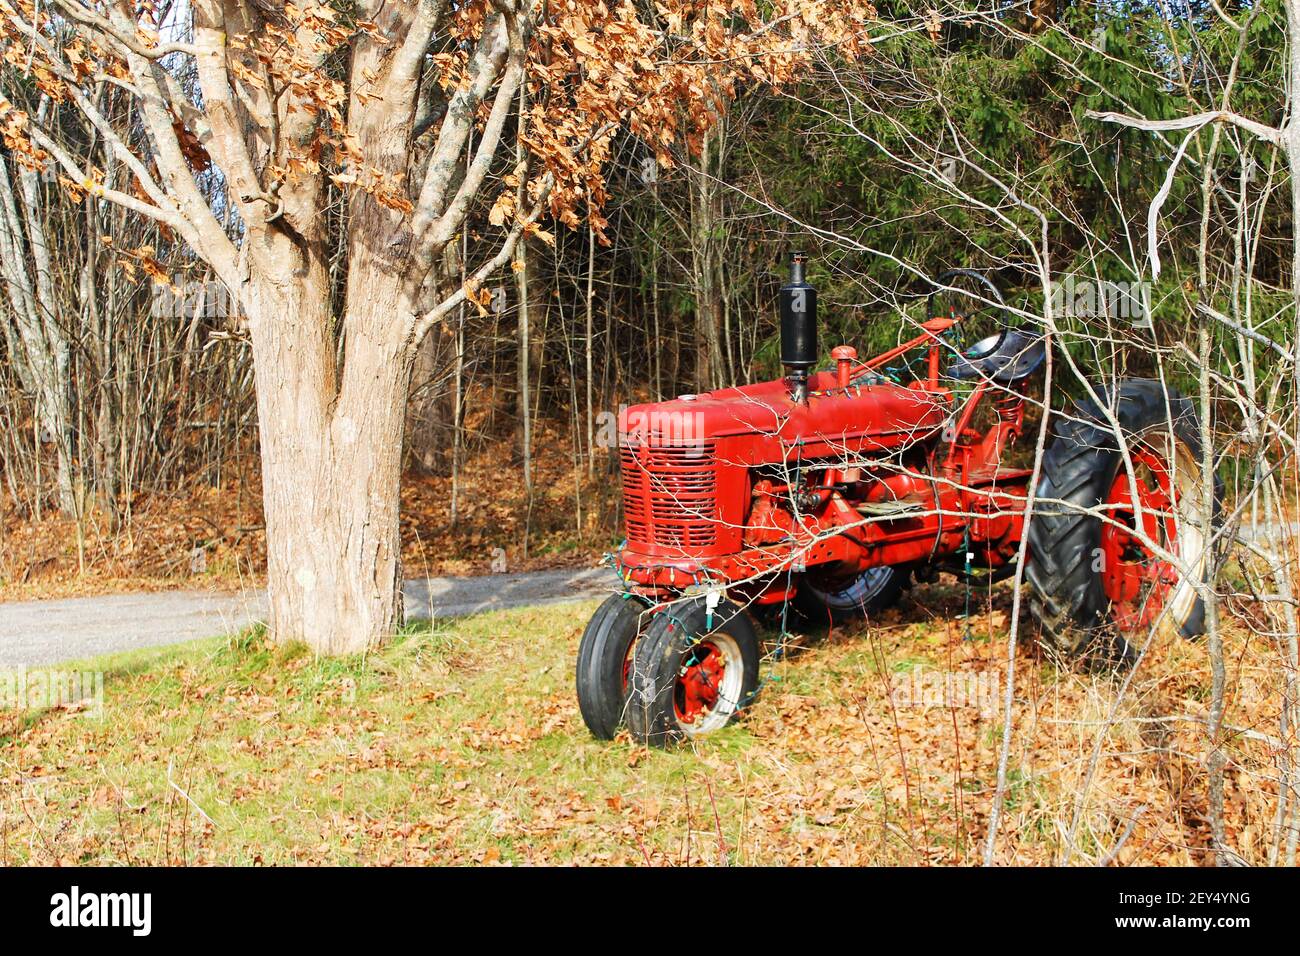 Ein kleiner, altmodischer, roter Bauernhof Traktor geparkt entlang einer Landstraße, zwischen den Bäumen, Herbst. Der Traktor wurde mit Weihnachtsbeleuchtung aufgereiht. Stockfoto